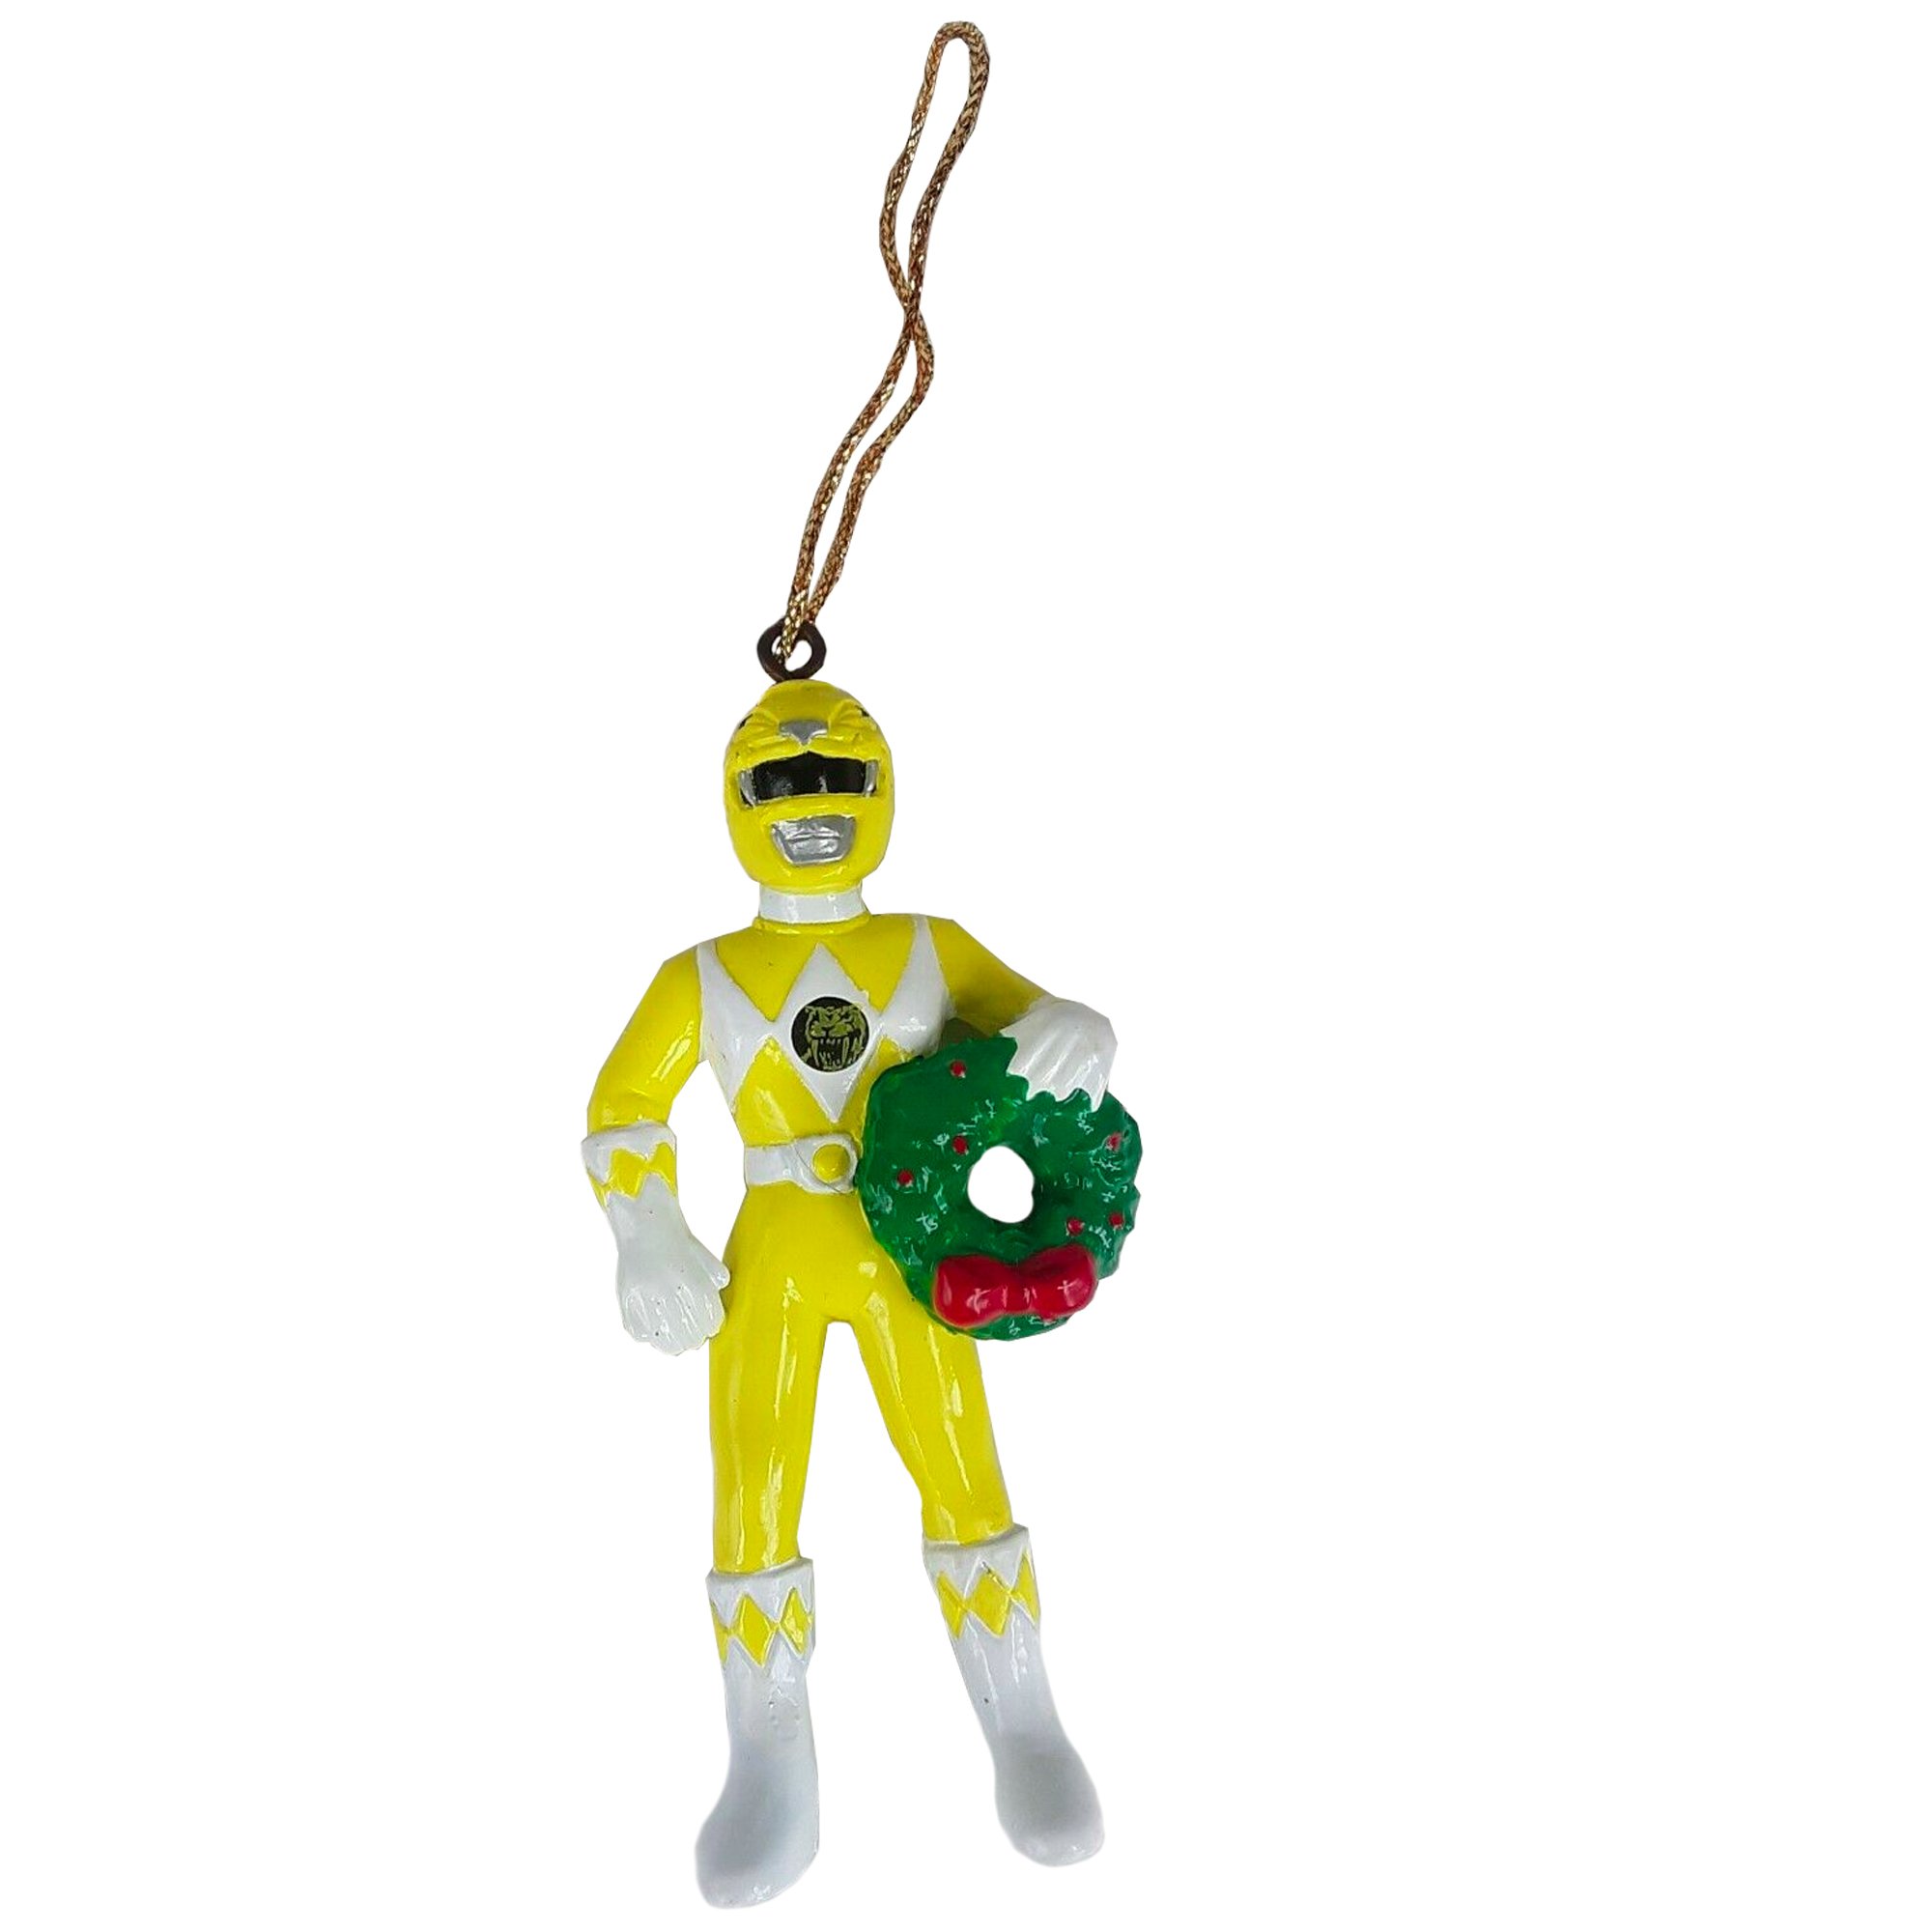 Kurt Adler Power Rangers Christmas Ornament: Trini